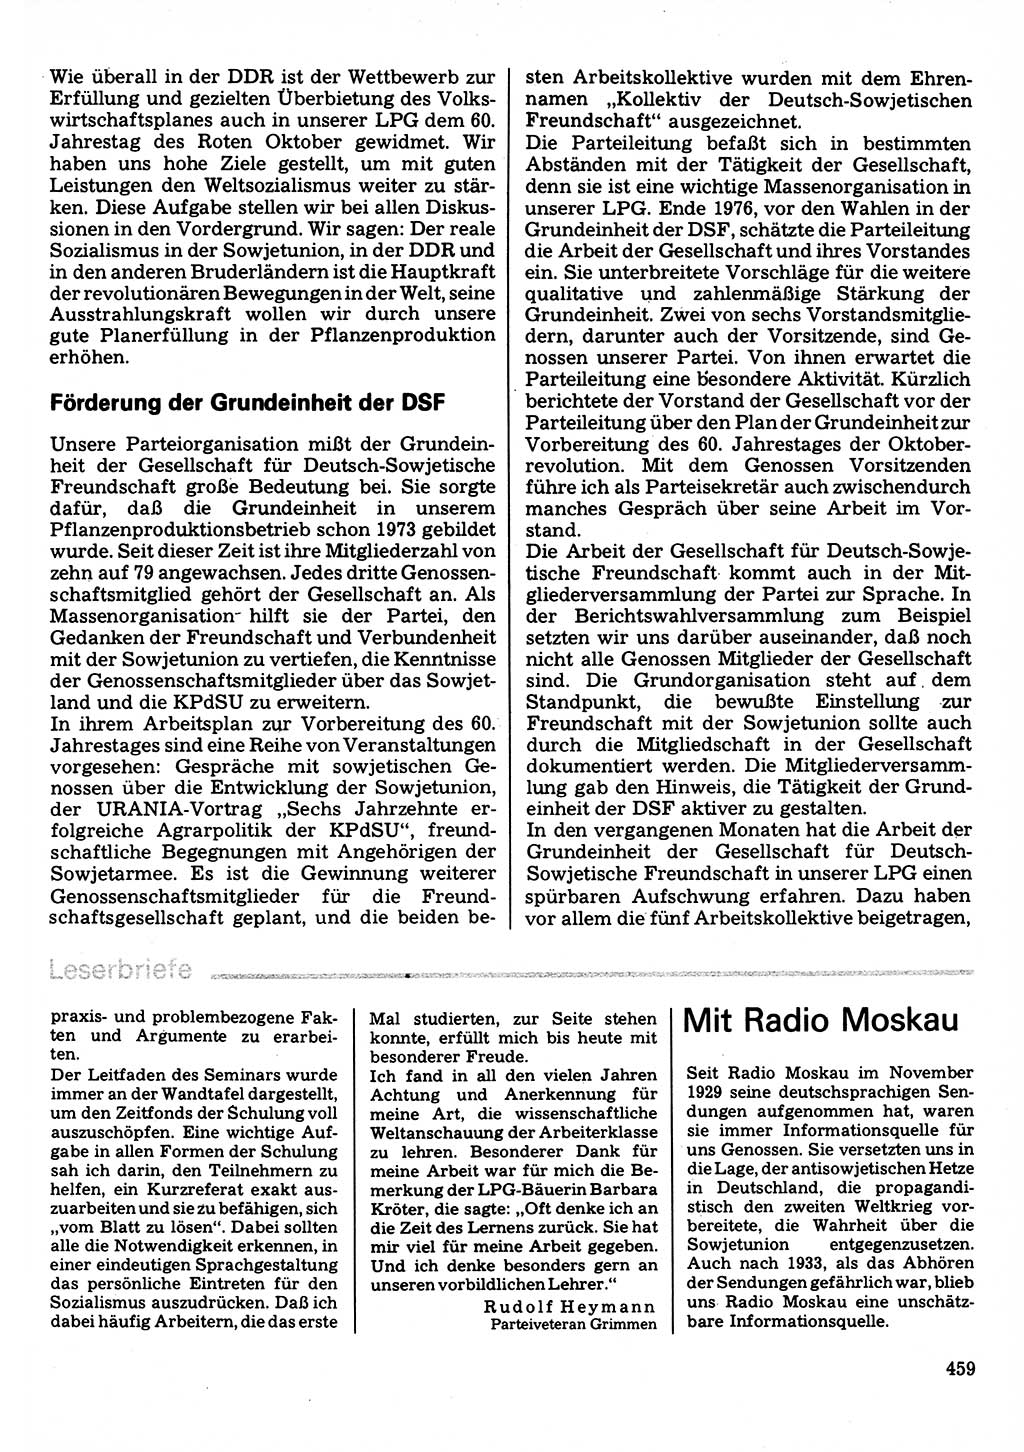 Neuer Weg (NW), Organ des Zentralkomitees (ZK) der SED (Sozialistische Einheitspartei Deutschlands) für Fragen des Parteilebens, 32. Jahrgang [Deutsche Demokratische Republik (DDR)] 1977, Seite 459 (NW ZK SED DDR 1977, S. 459)